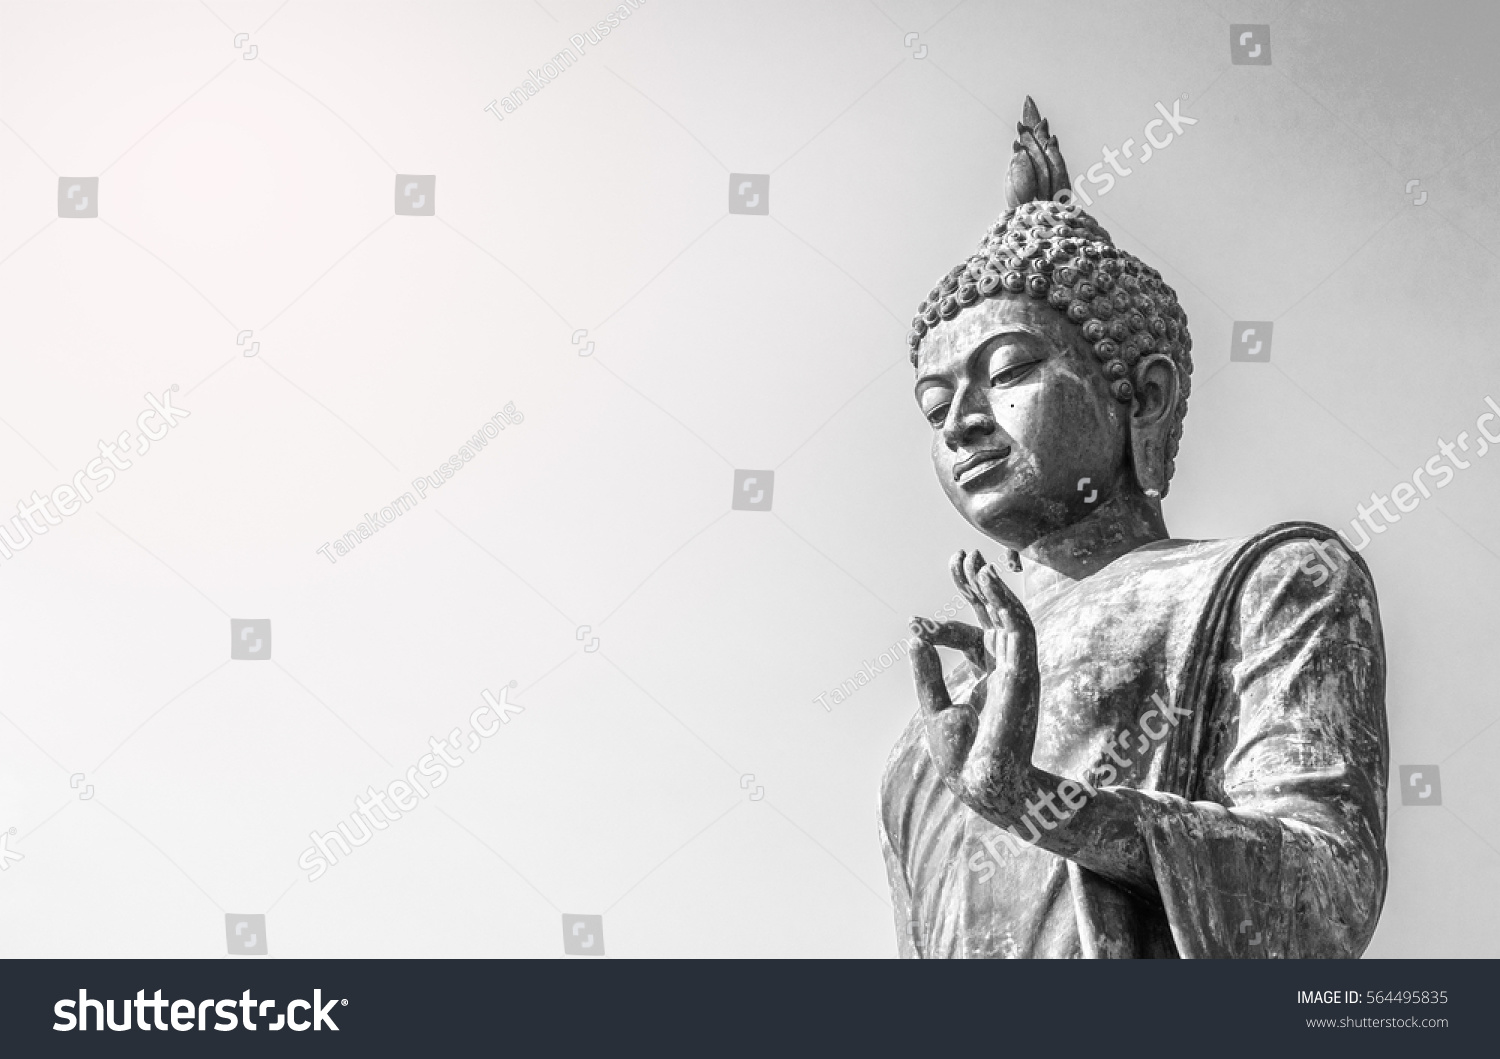 Big buddha statue  at phutthaMonthon background #564495835